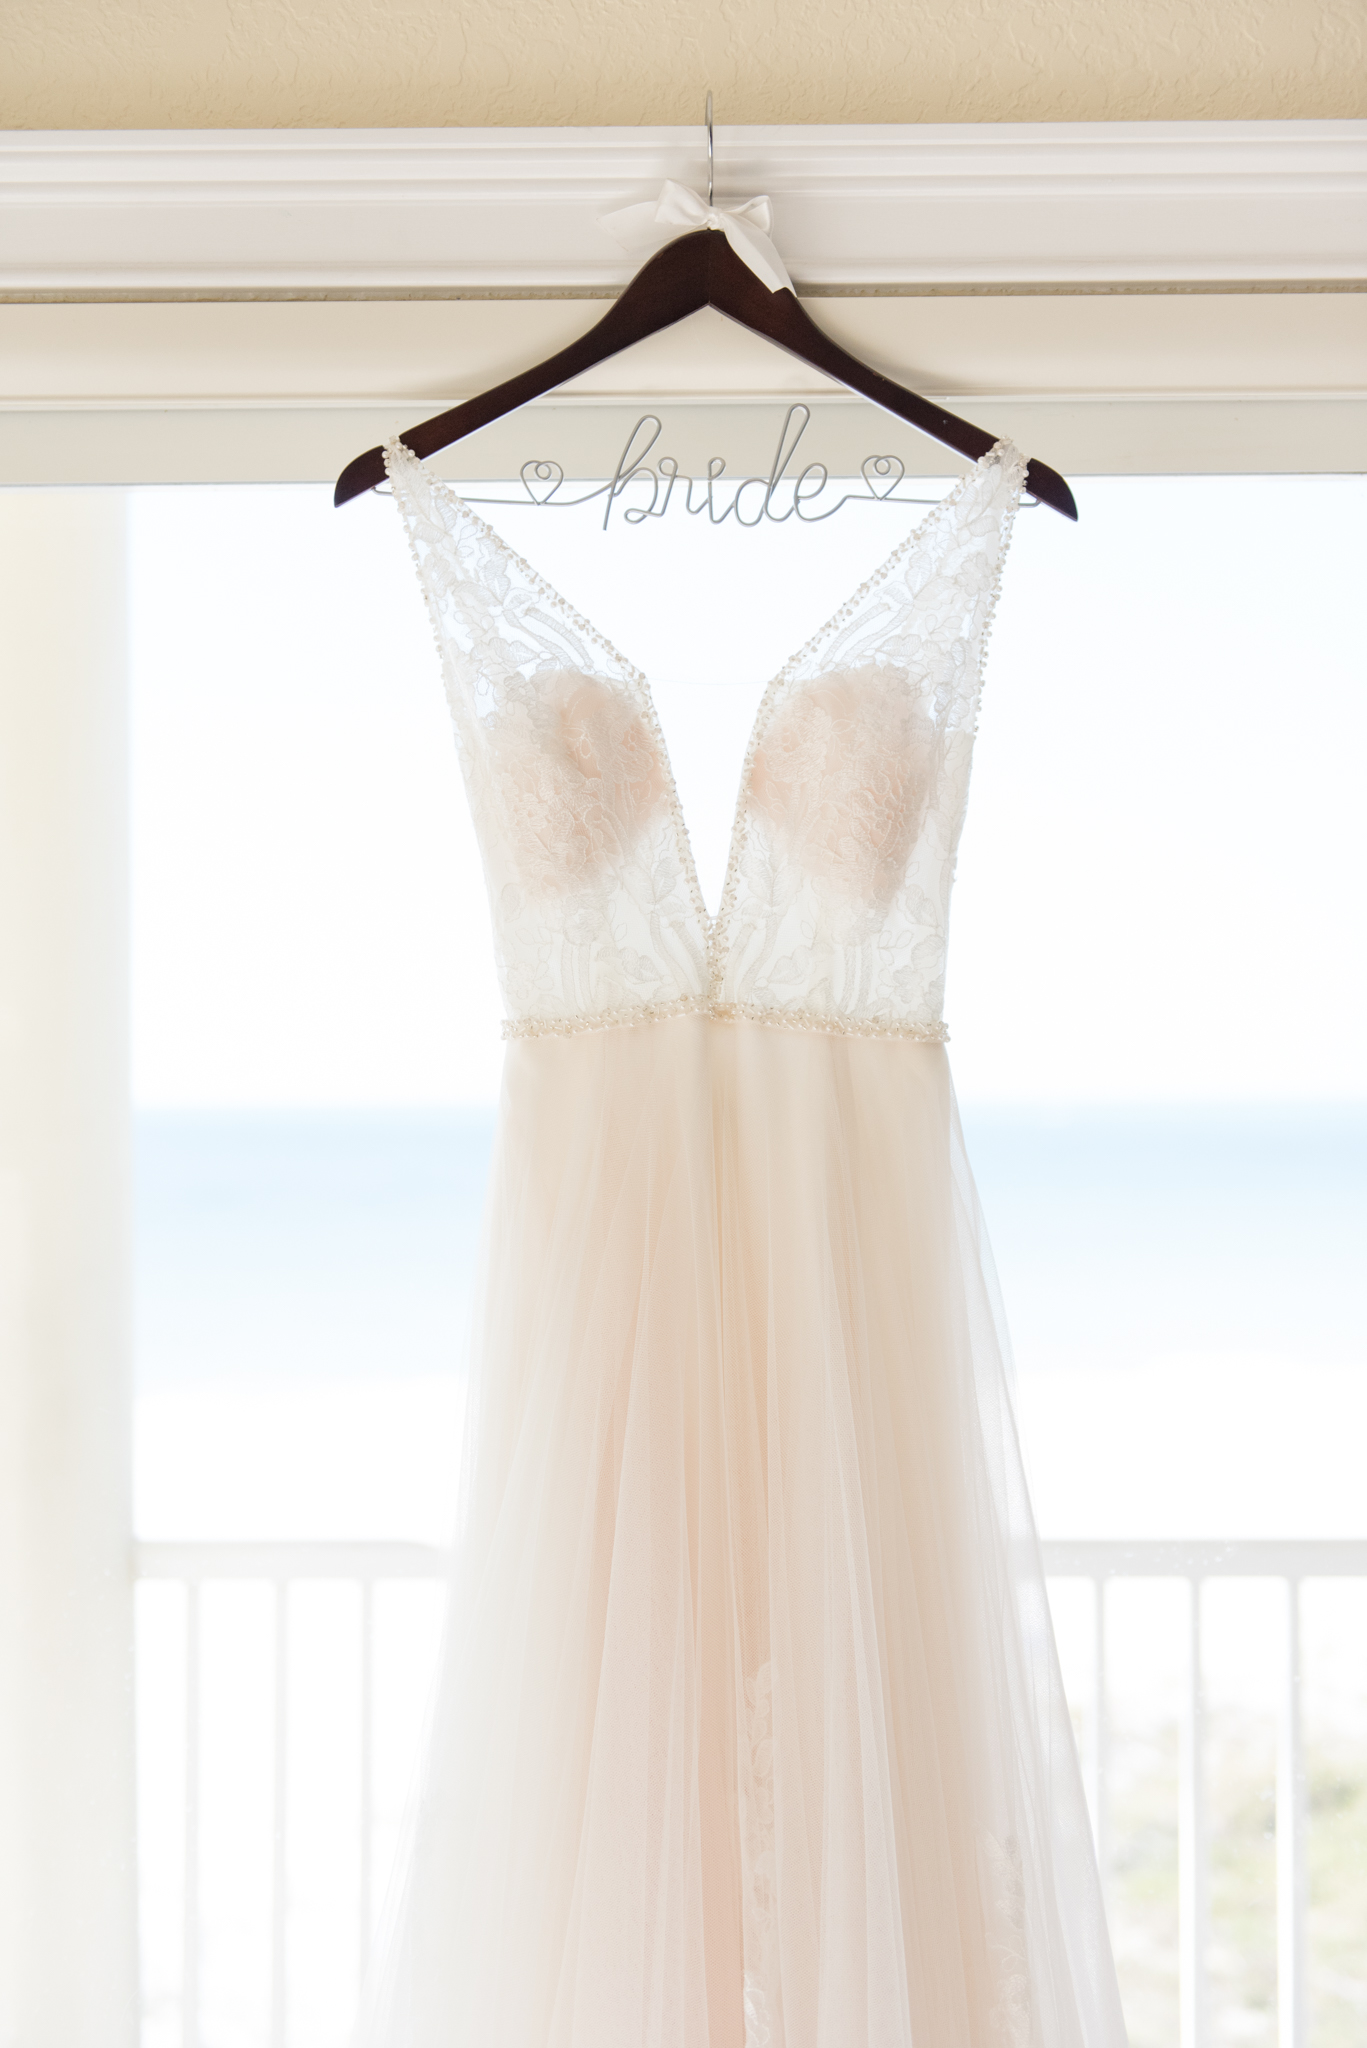 Wedding dress hangs in window.